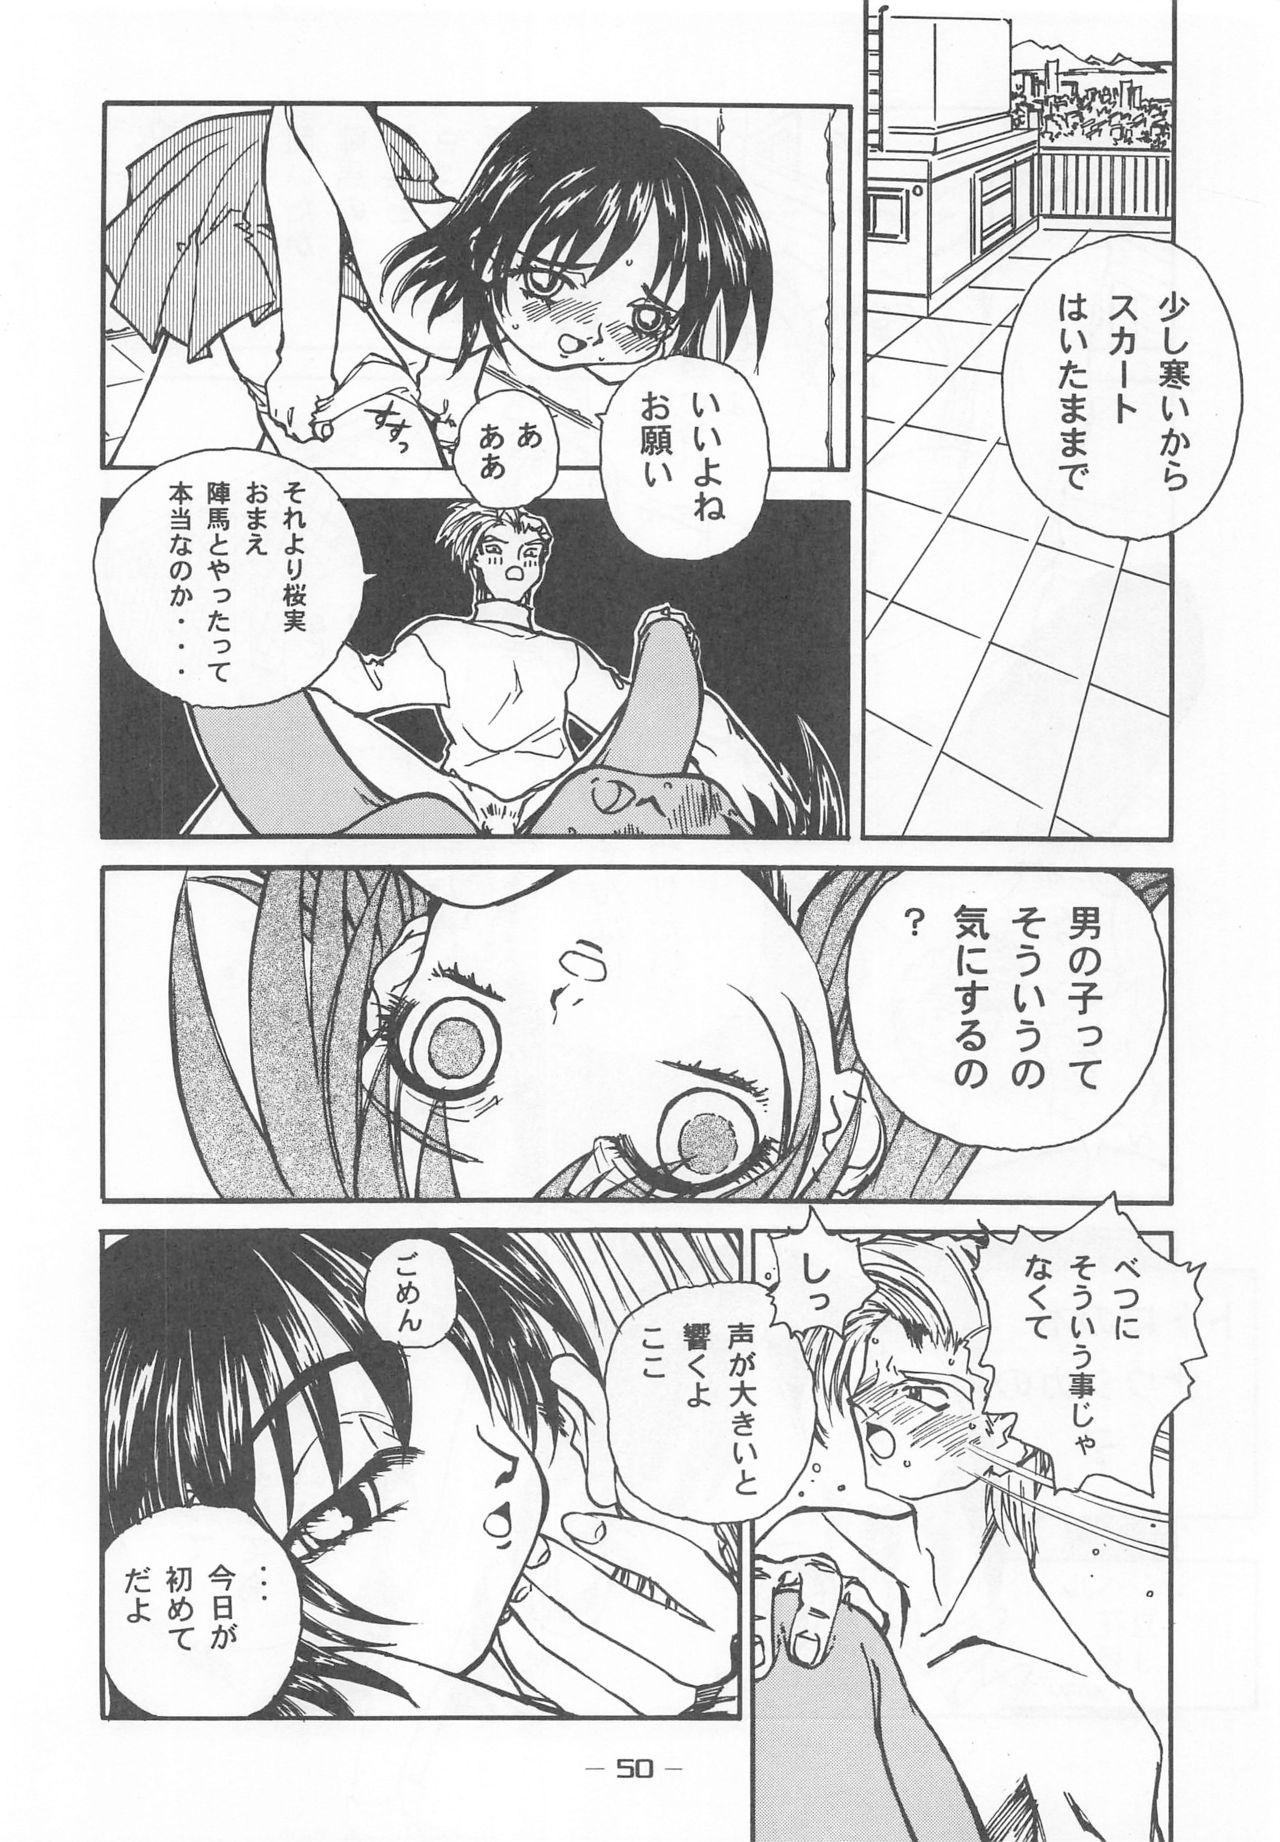 Otonano Do-wa Vol. 7 48